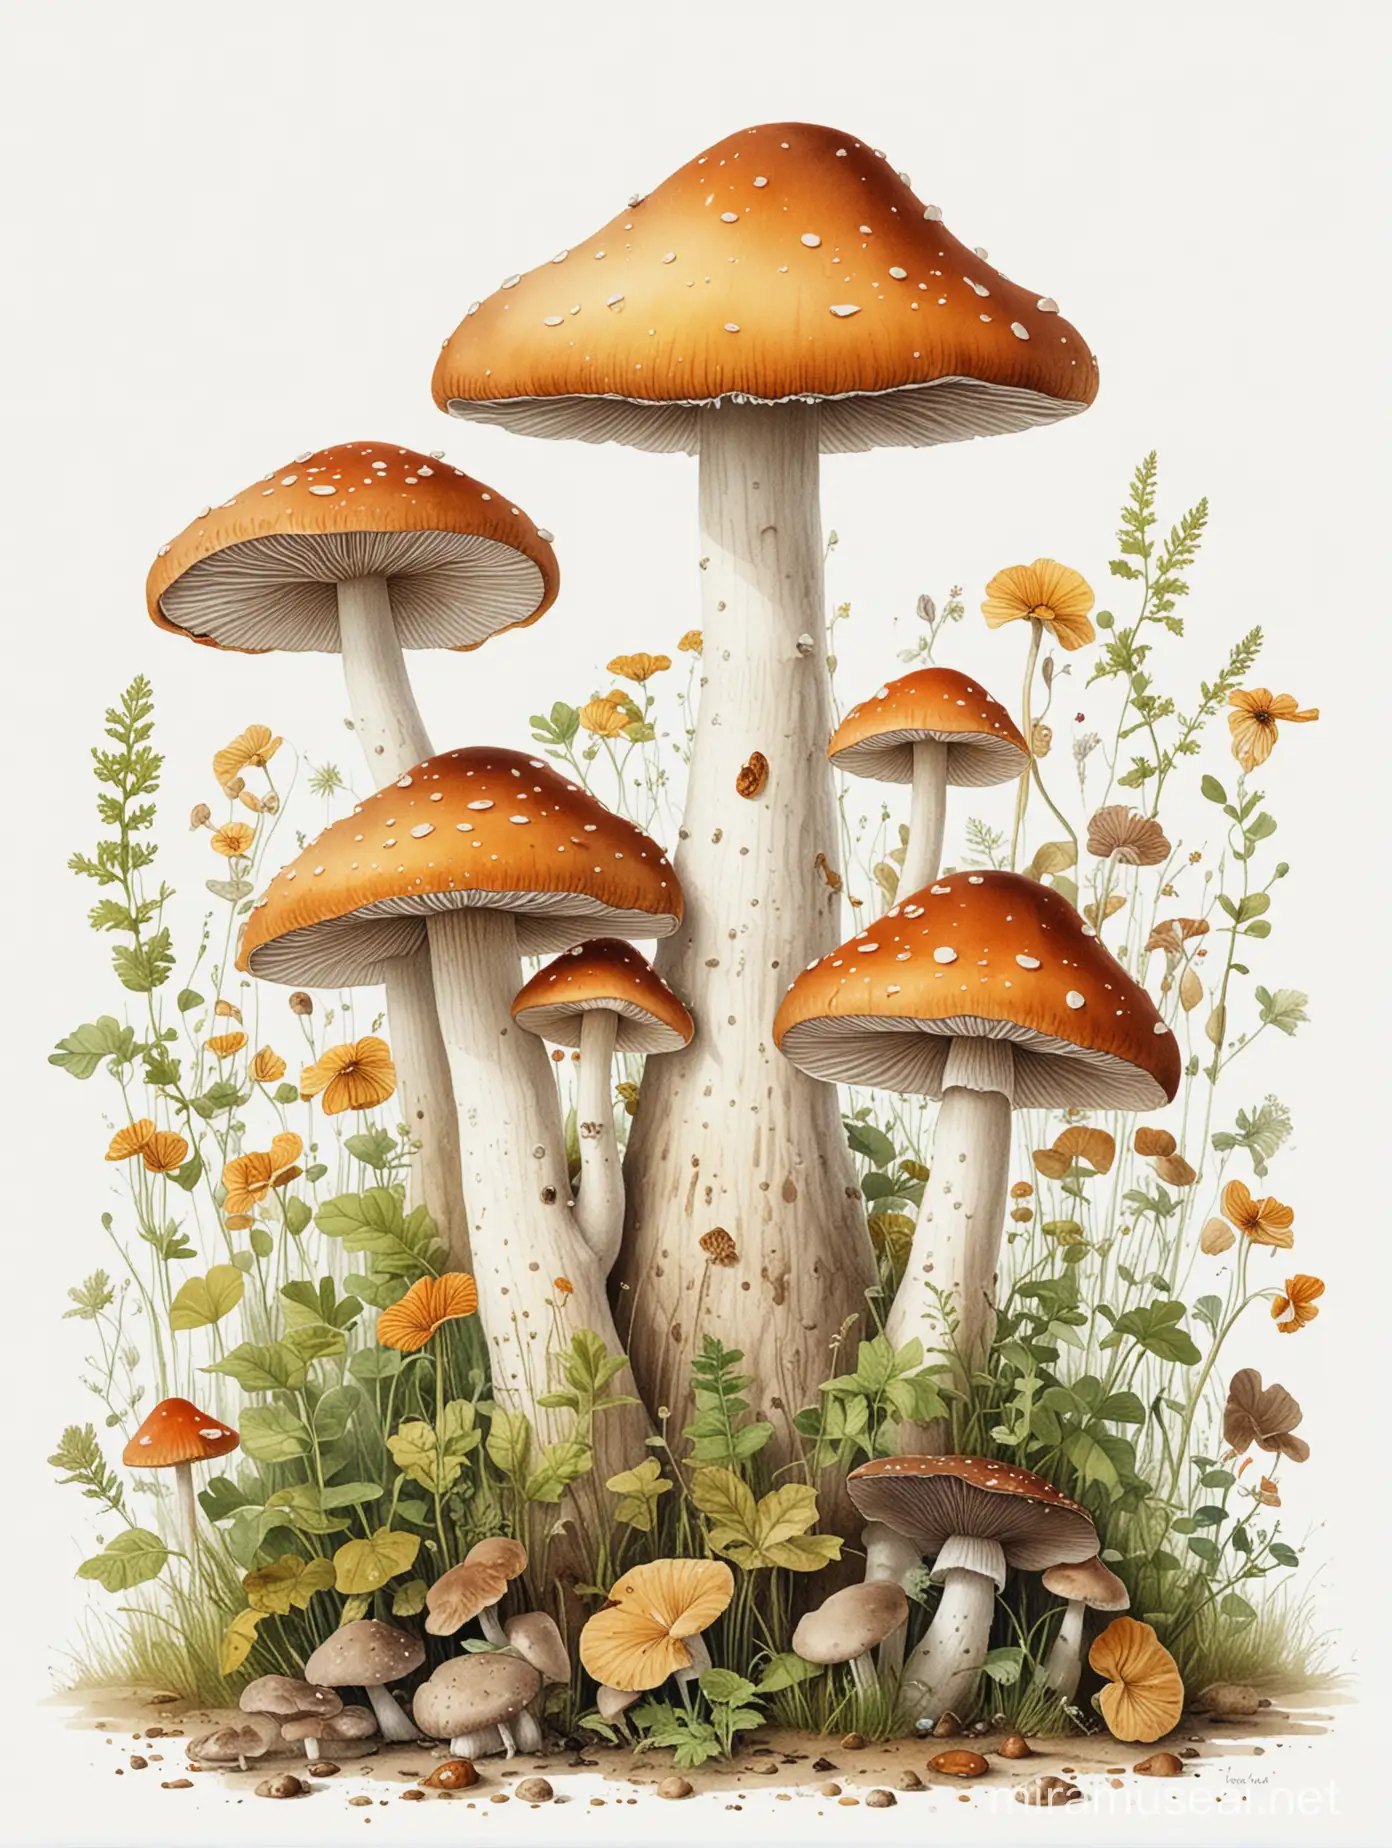 children's book, mushroom illustration, white background

